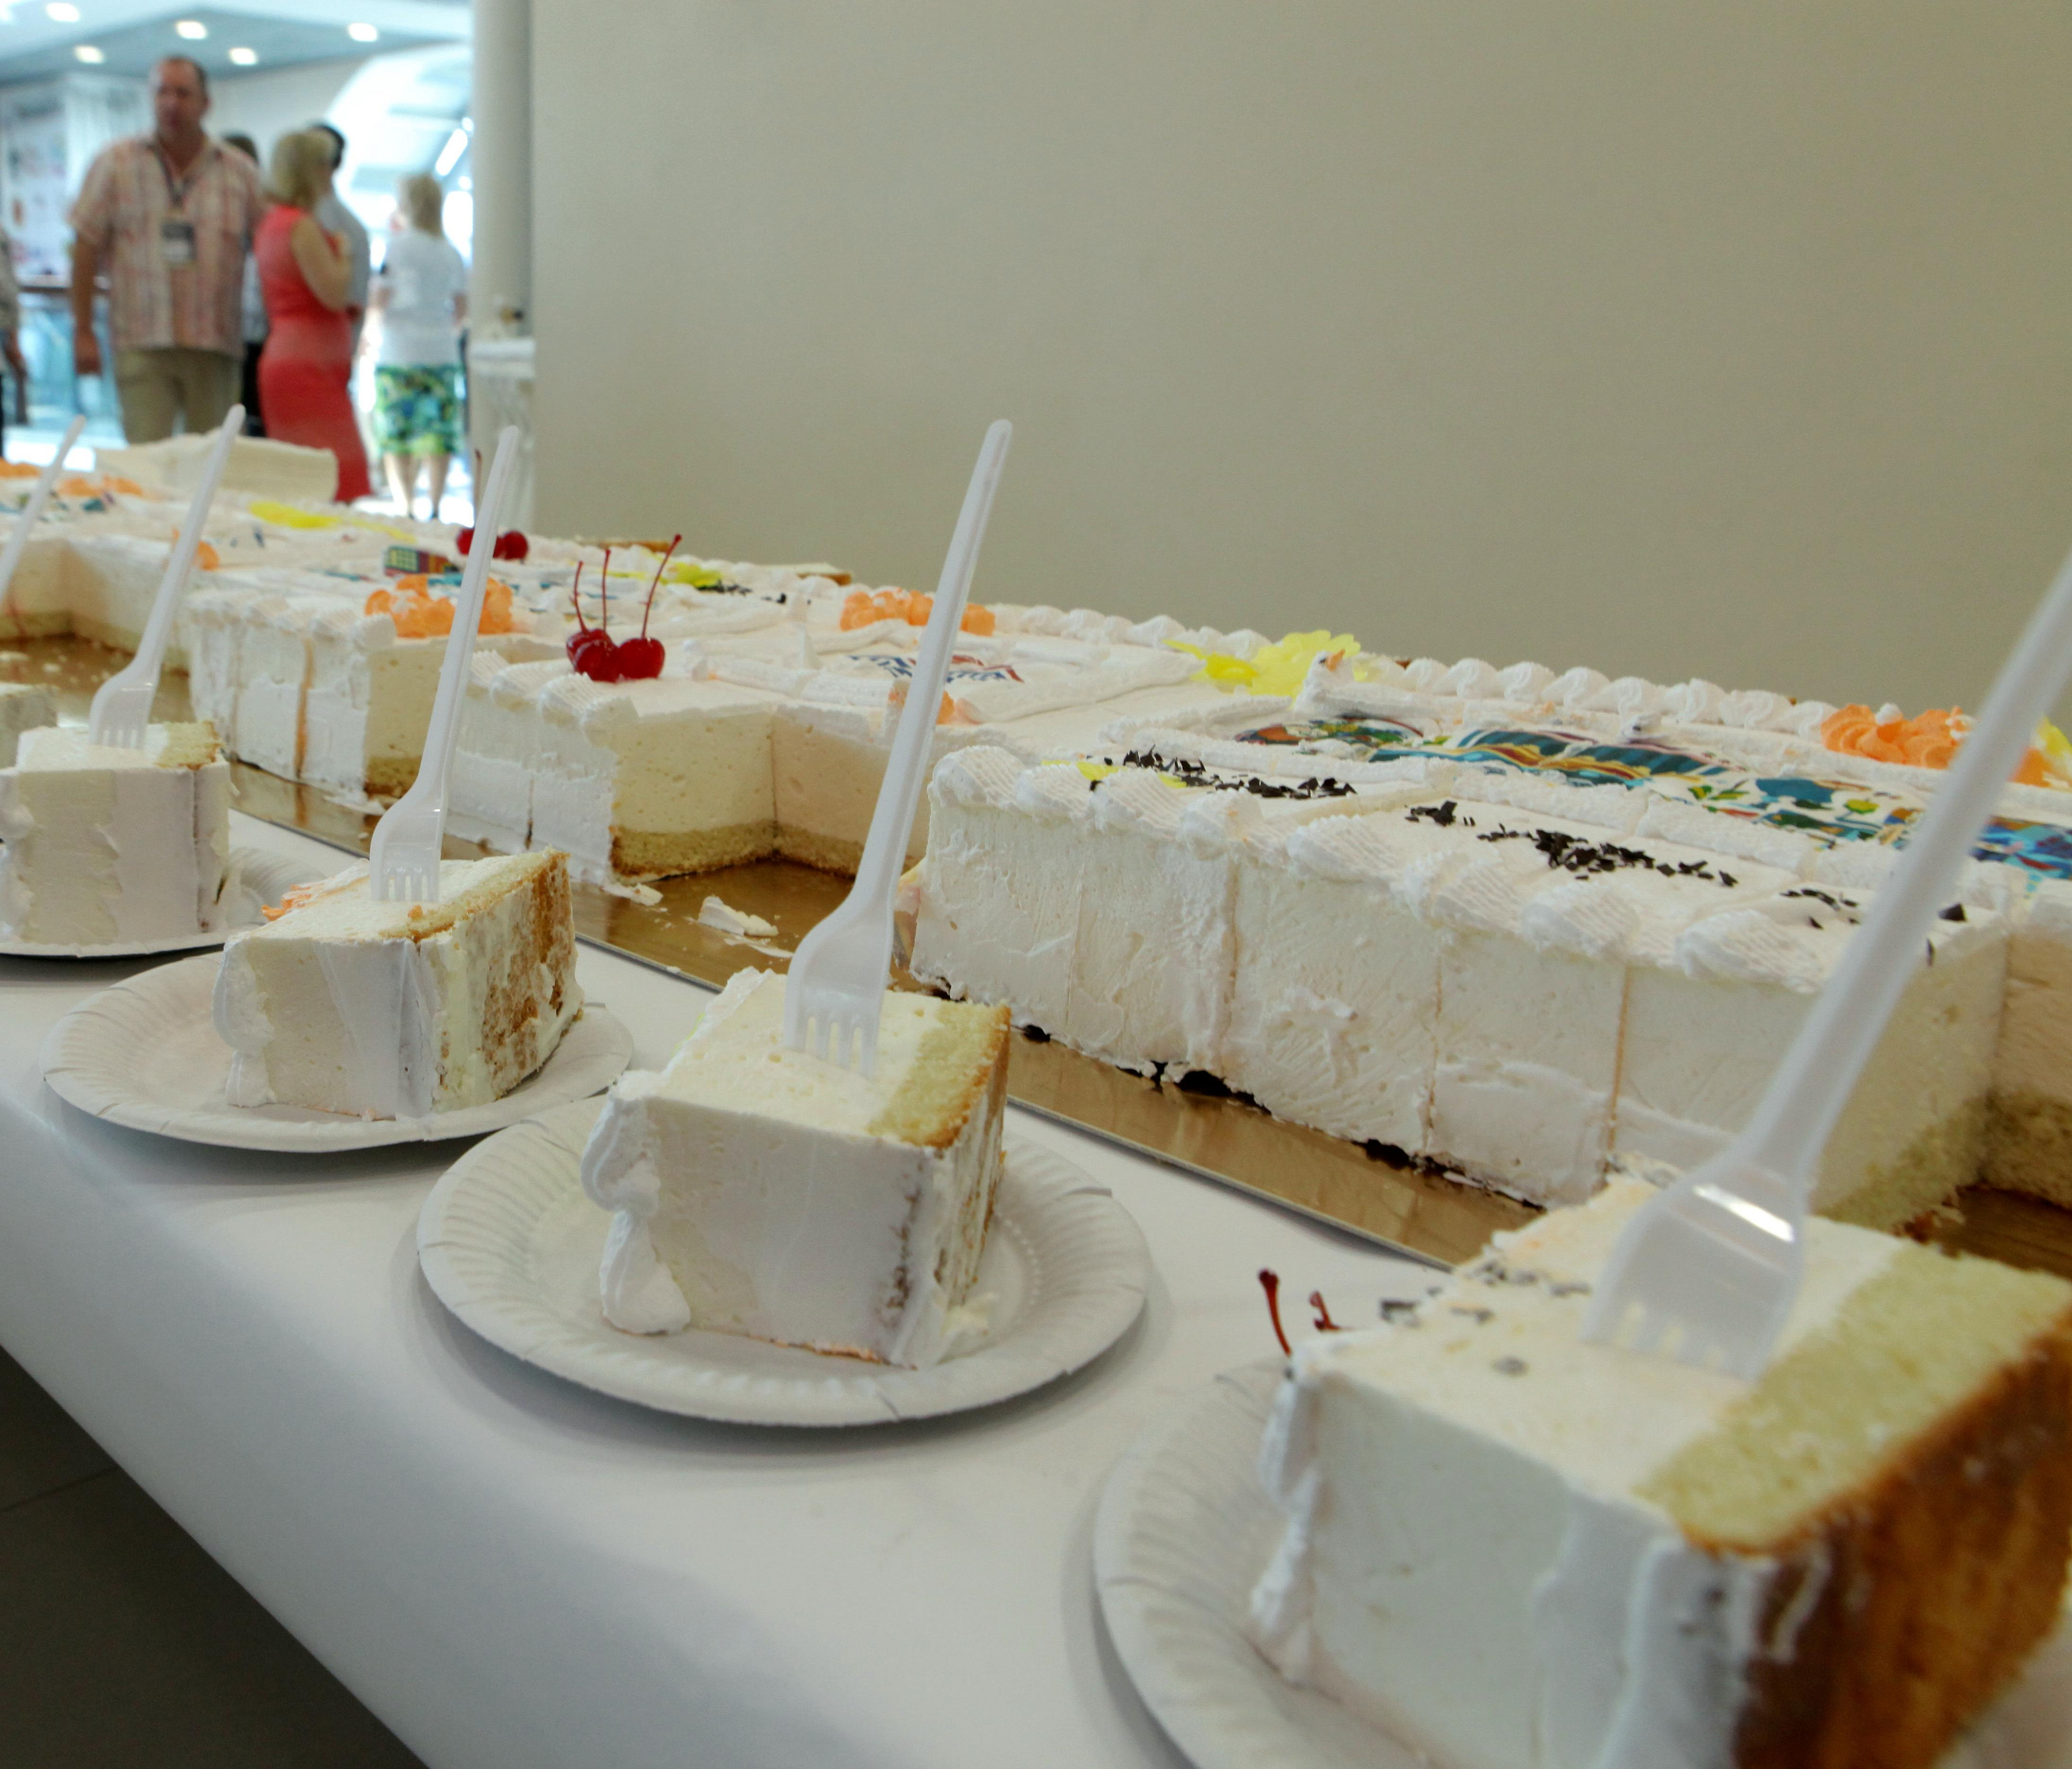 130-килограммовый торт приготовят ко Дню города в Новосибирске